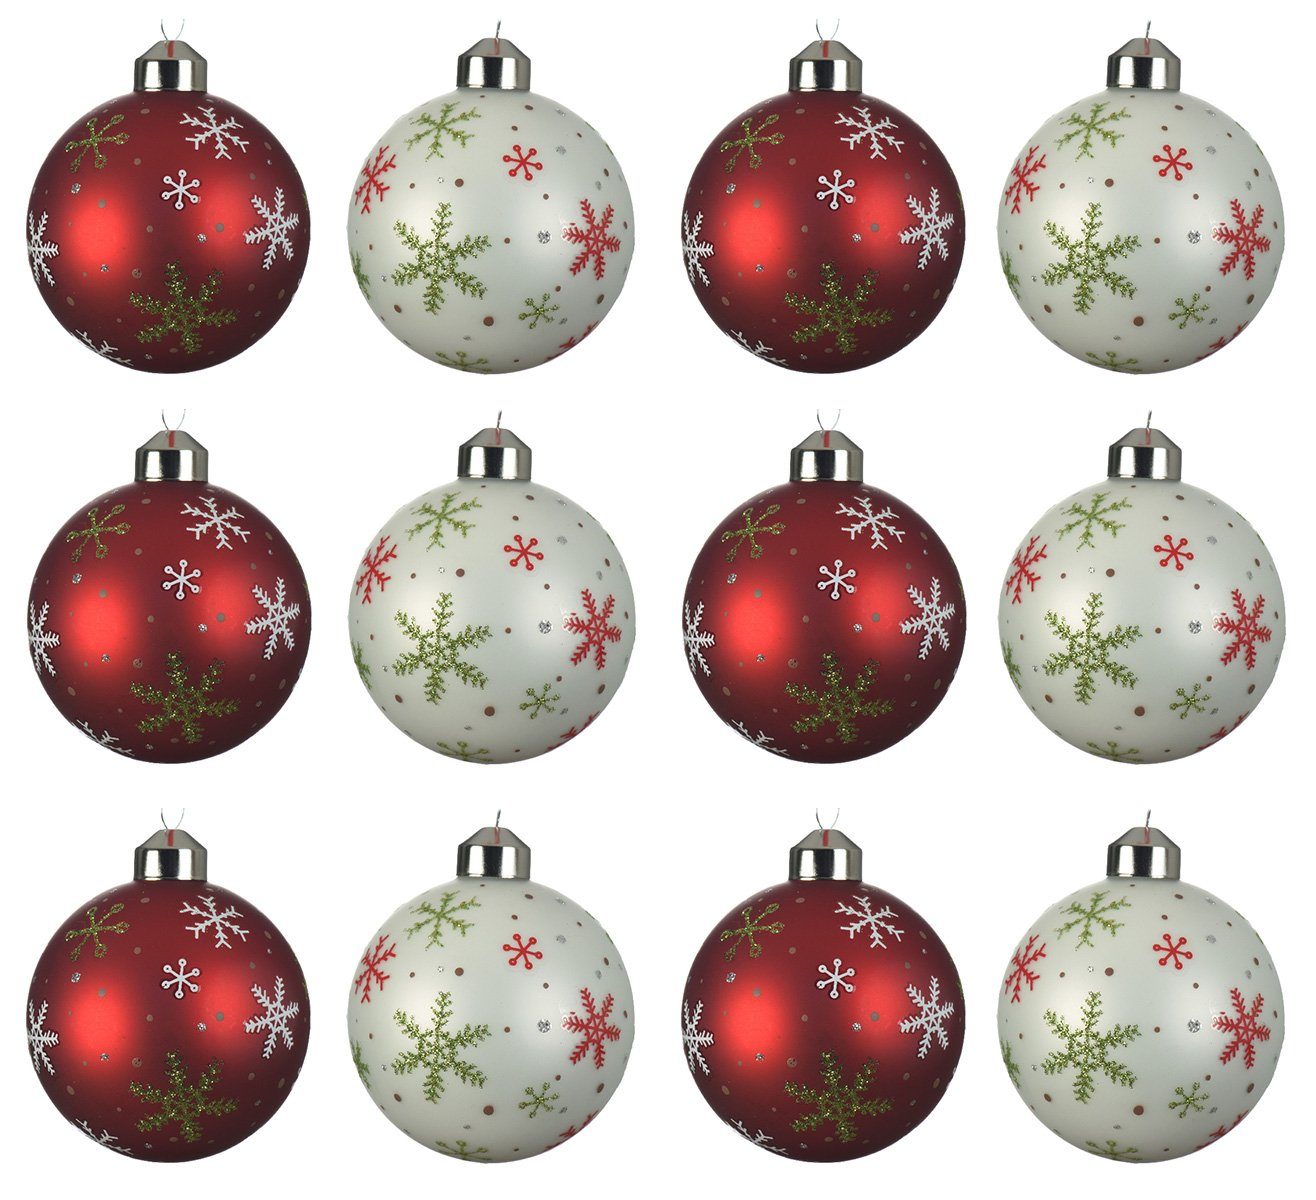 Decoris season decorations Weihnachtsbaumkugel, Weihnachtskugeln Glas 8cm mit Schneeflocken Motiv 12er Set rot / weiß